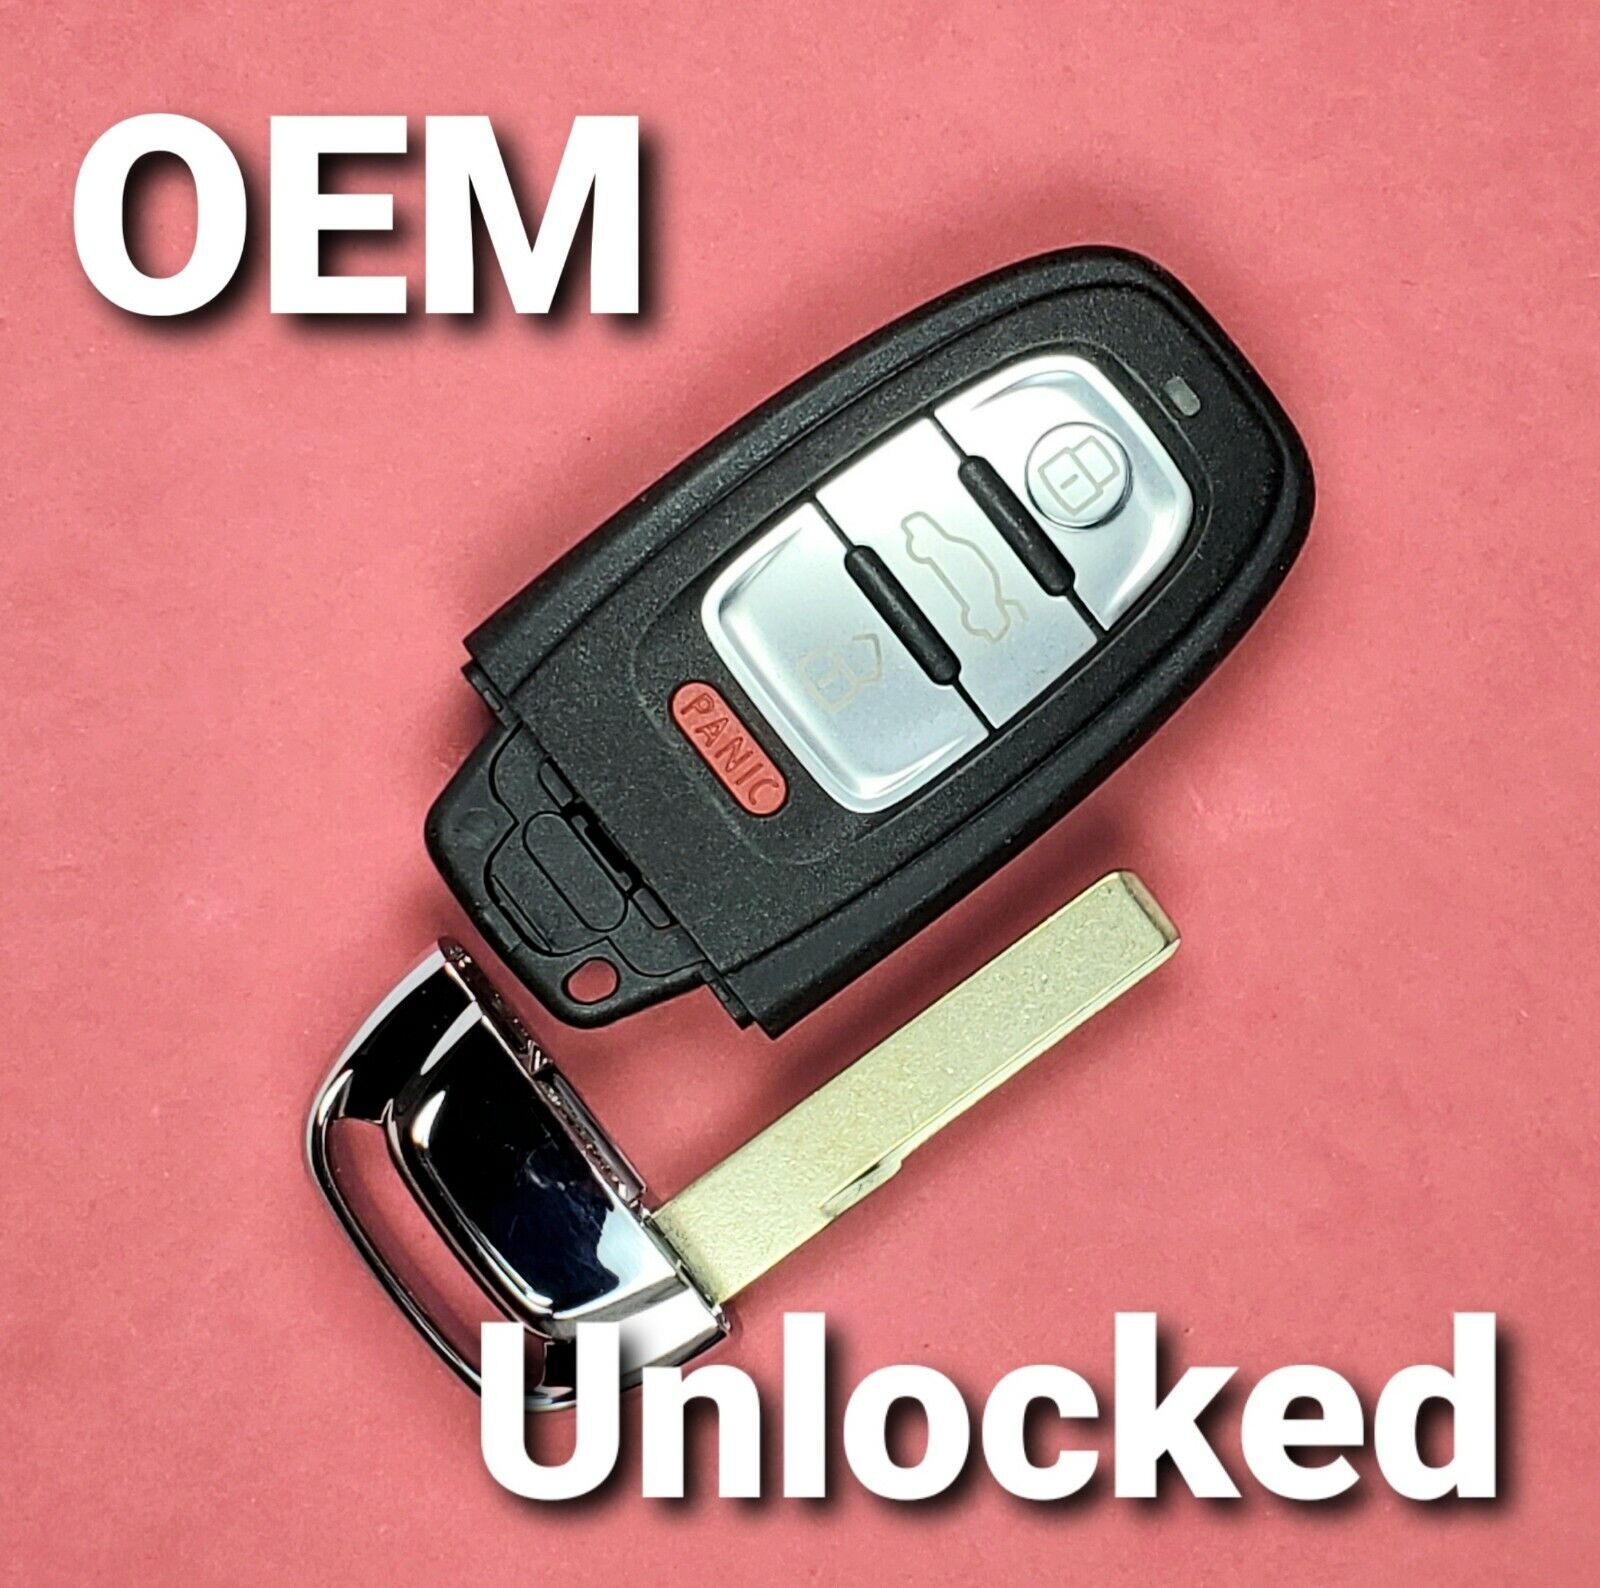 IYZFBSB802 Unlocked OEM Audi Key w/o Comfort access 8KO 959 754 F